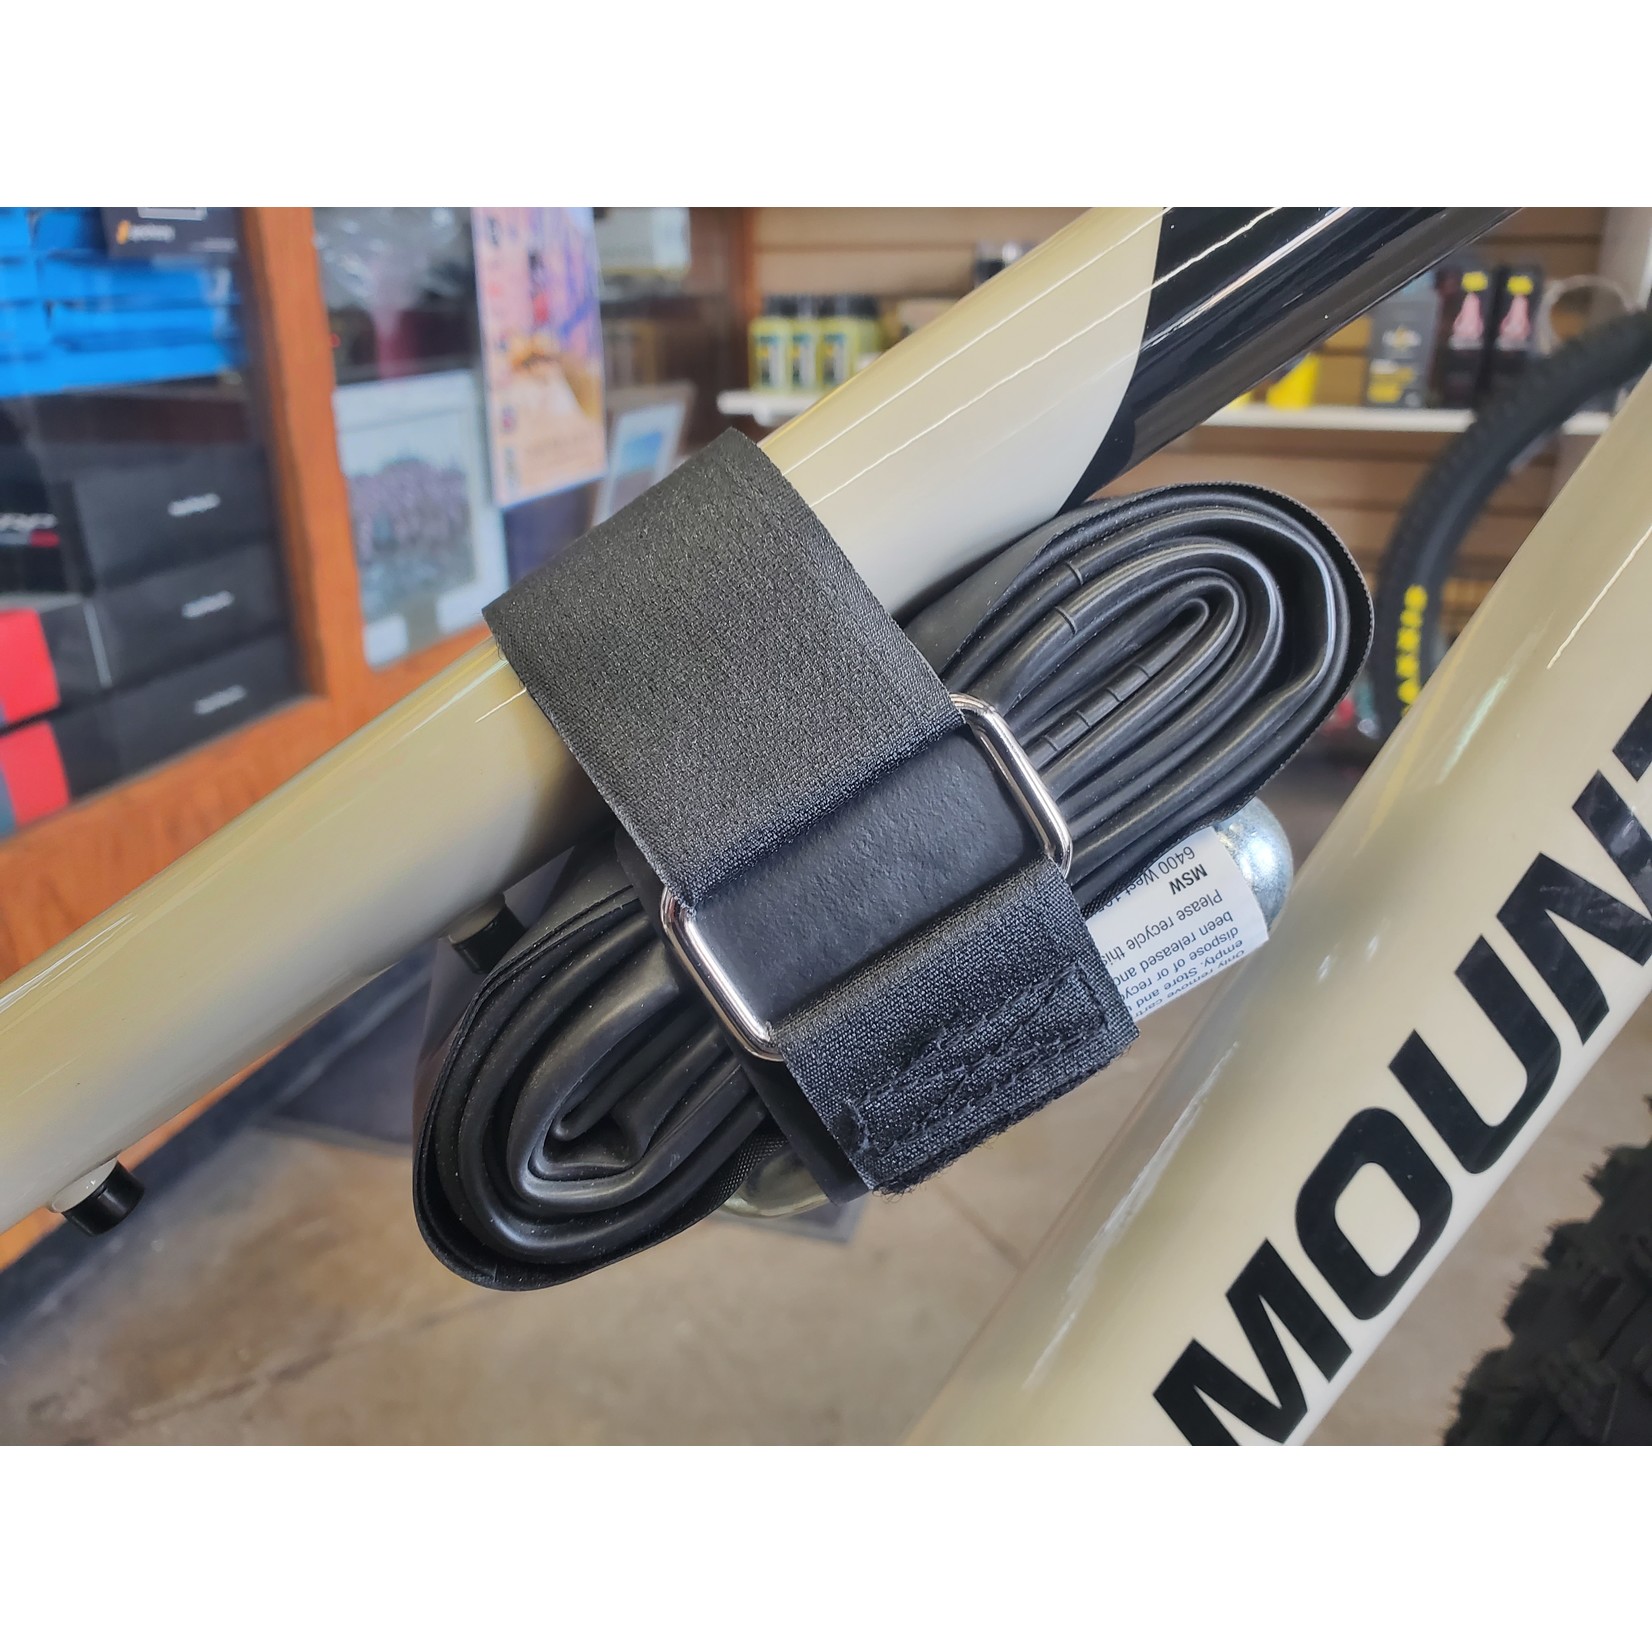 Utah Mountain Biking UMB Strap Kit